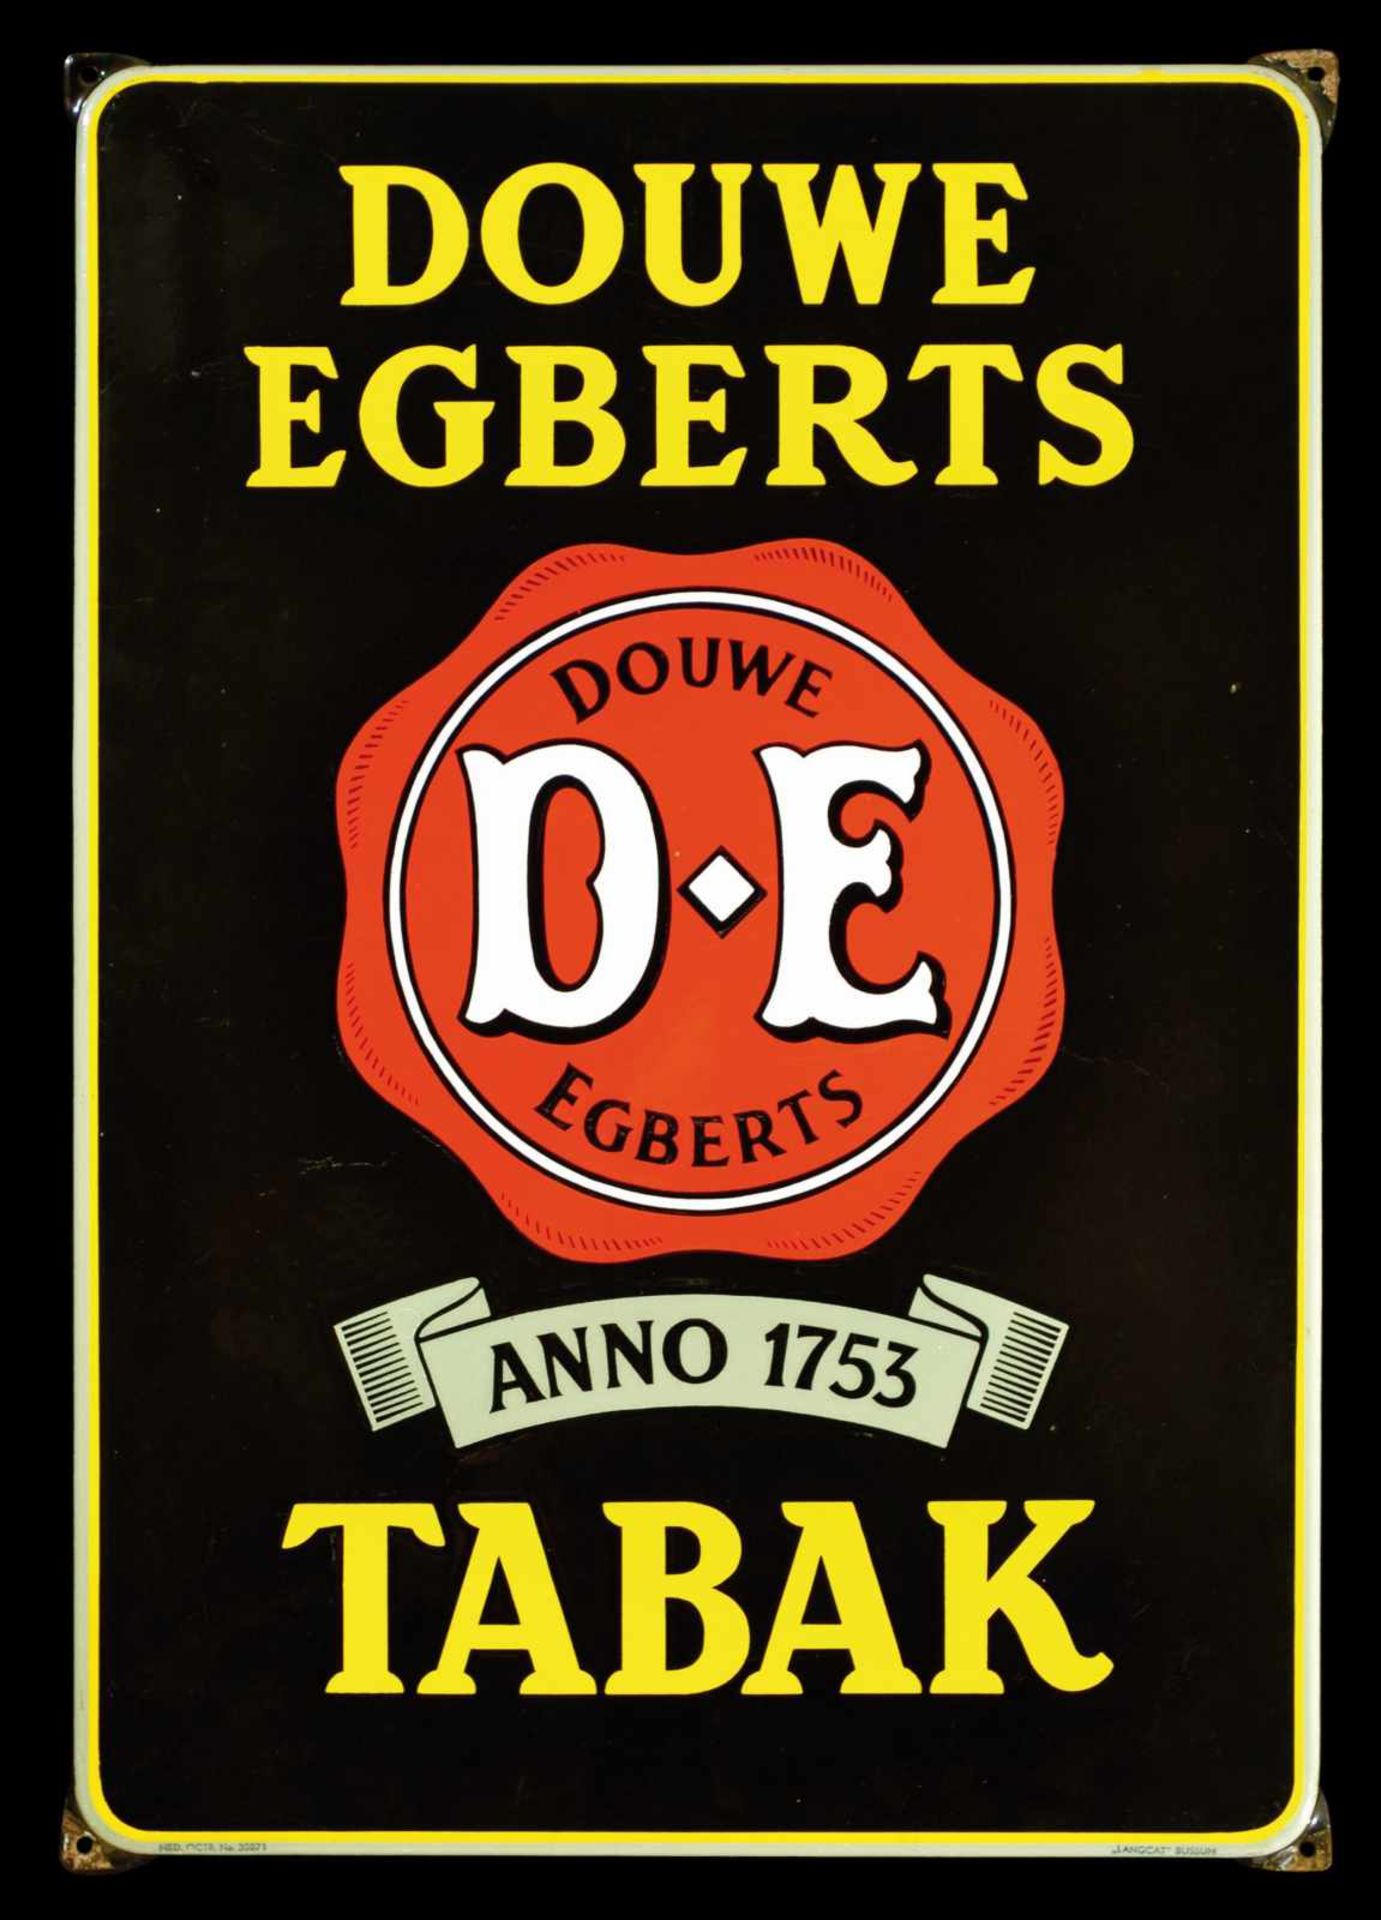 DOUWE EGBERTS TABAK (1+) Emailschild, abgekantet, dick schabloniert, Niederlande um 1940, 47 x 67